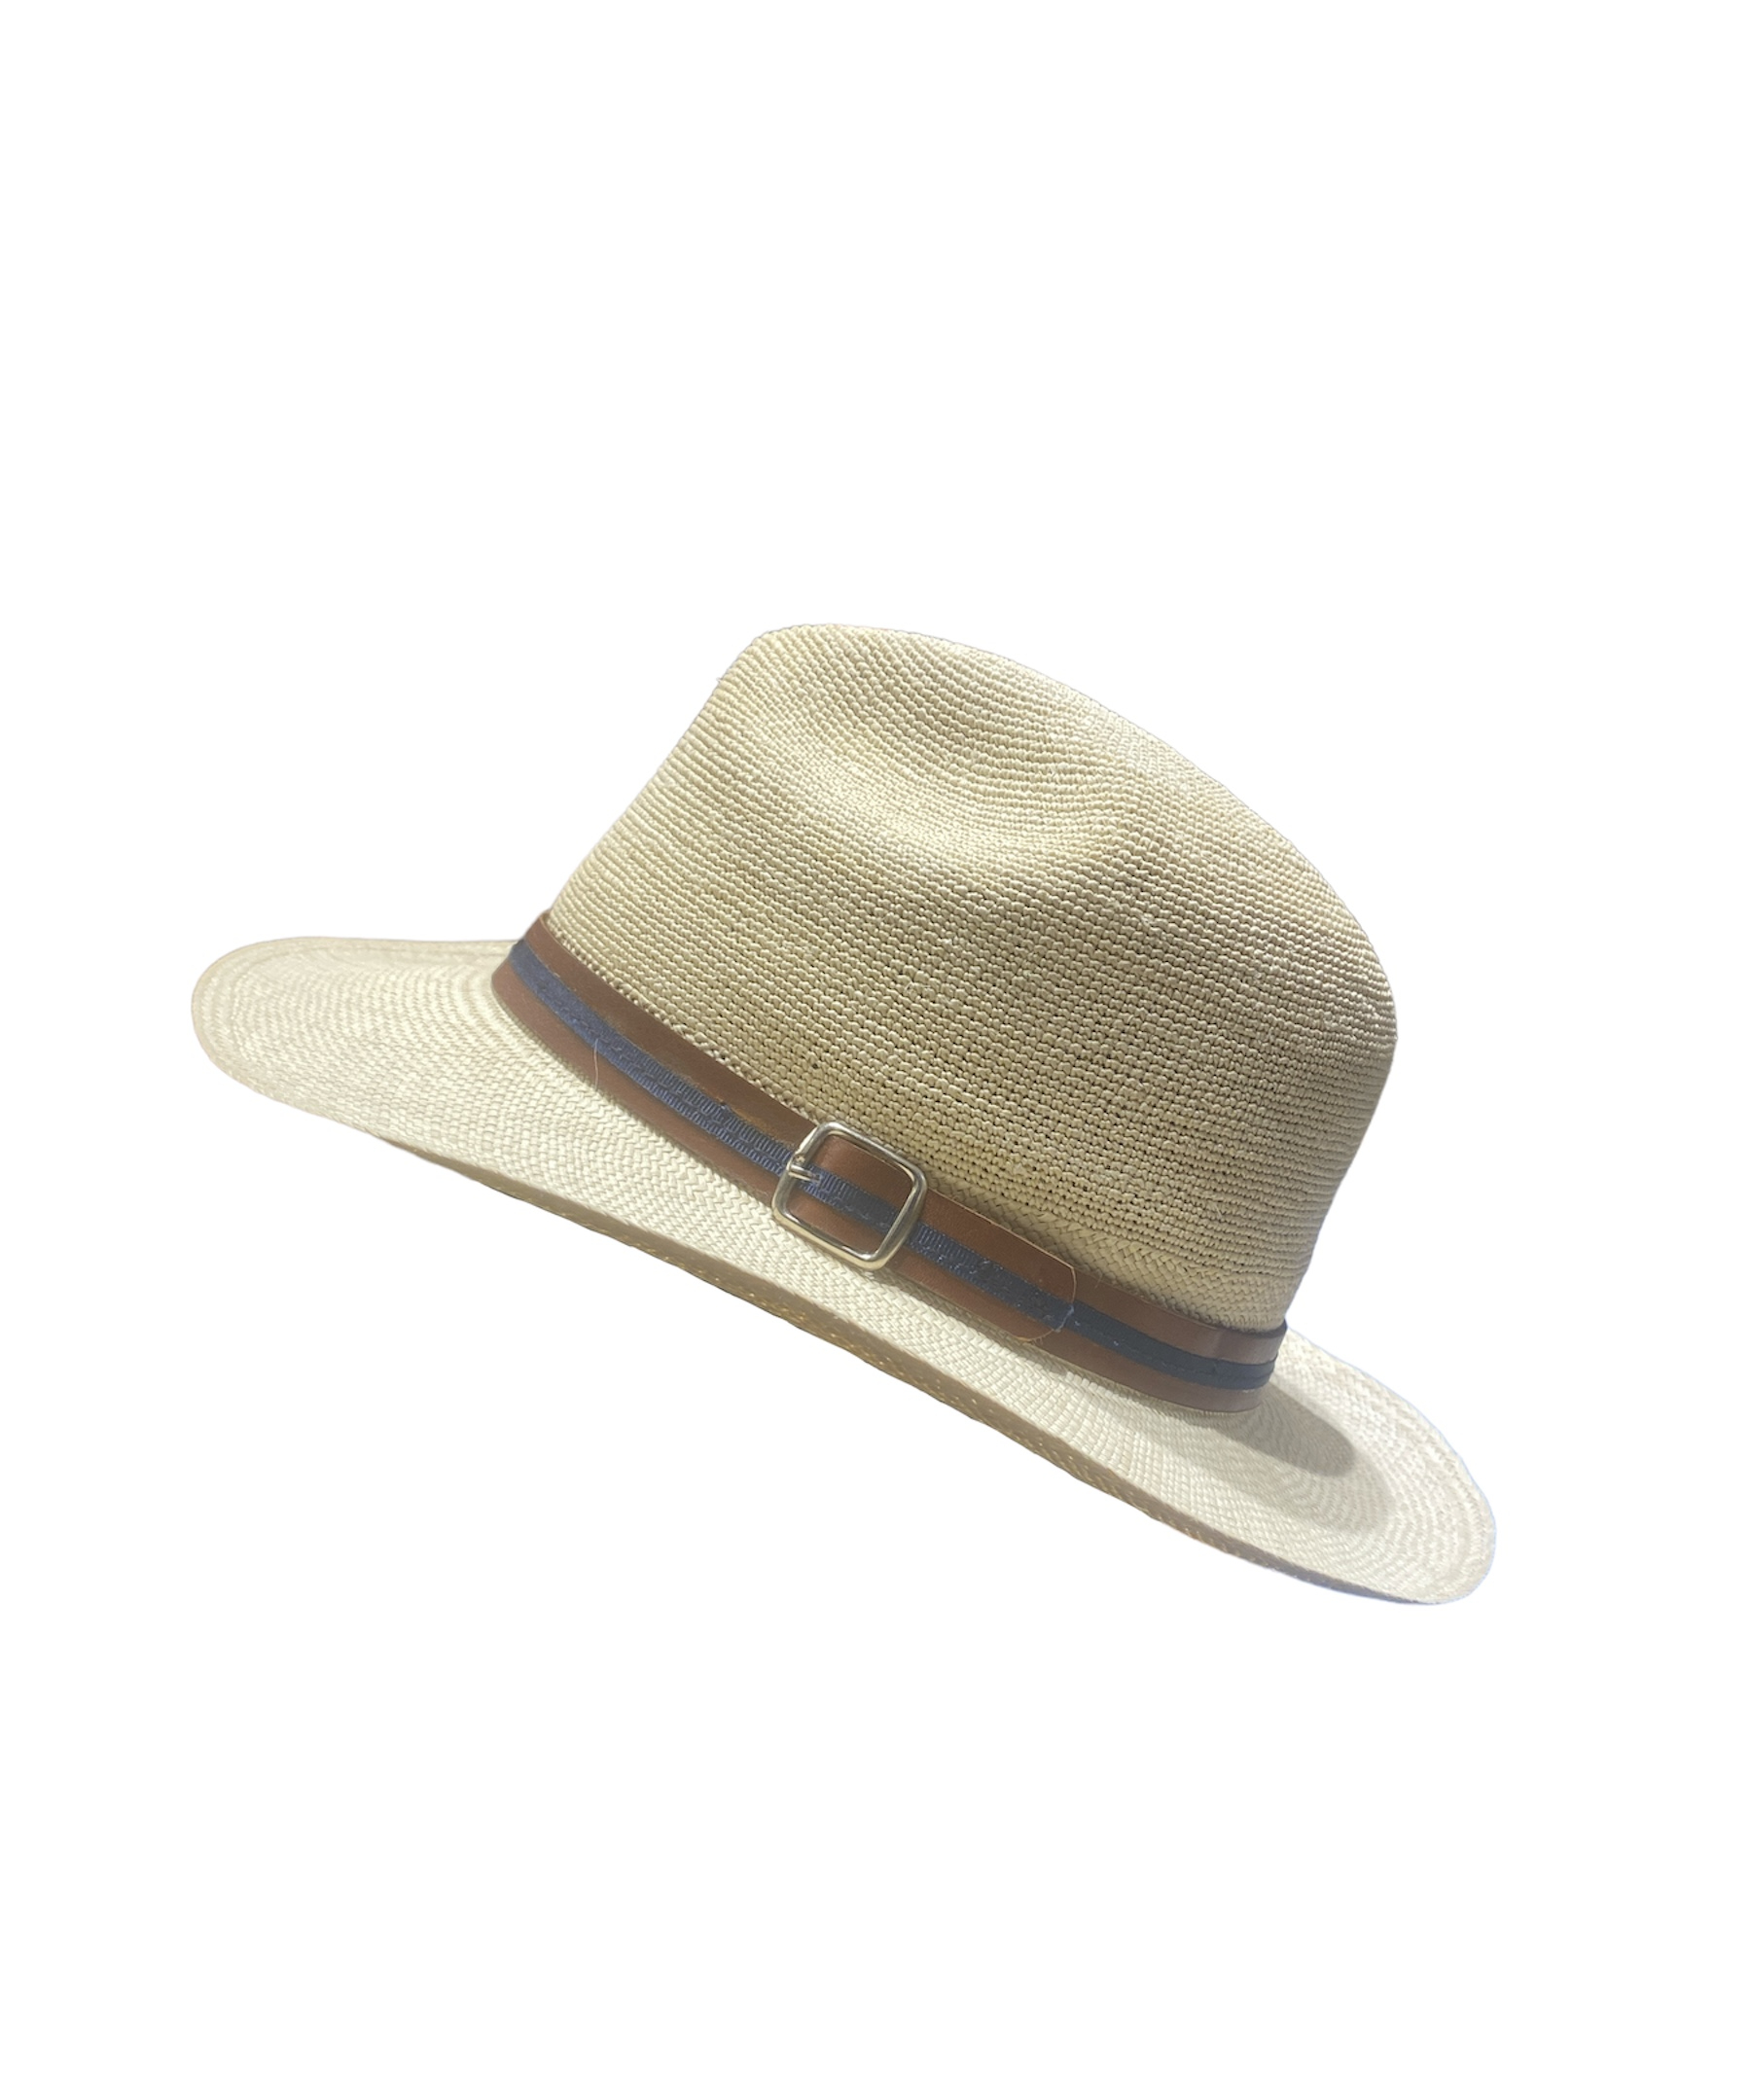 Chapeau Panama Brisa Fino avec ganse marron et bleu, disponible en taille 55, 57, 59 et 61